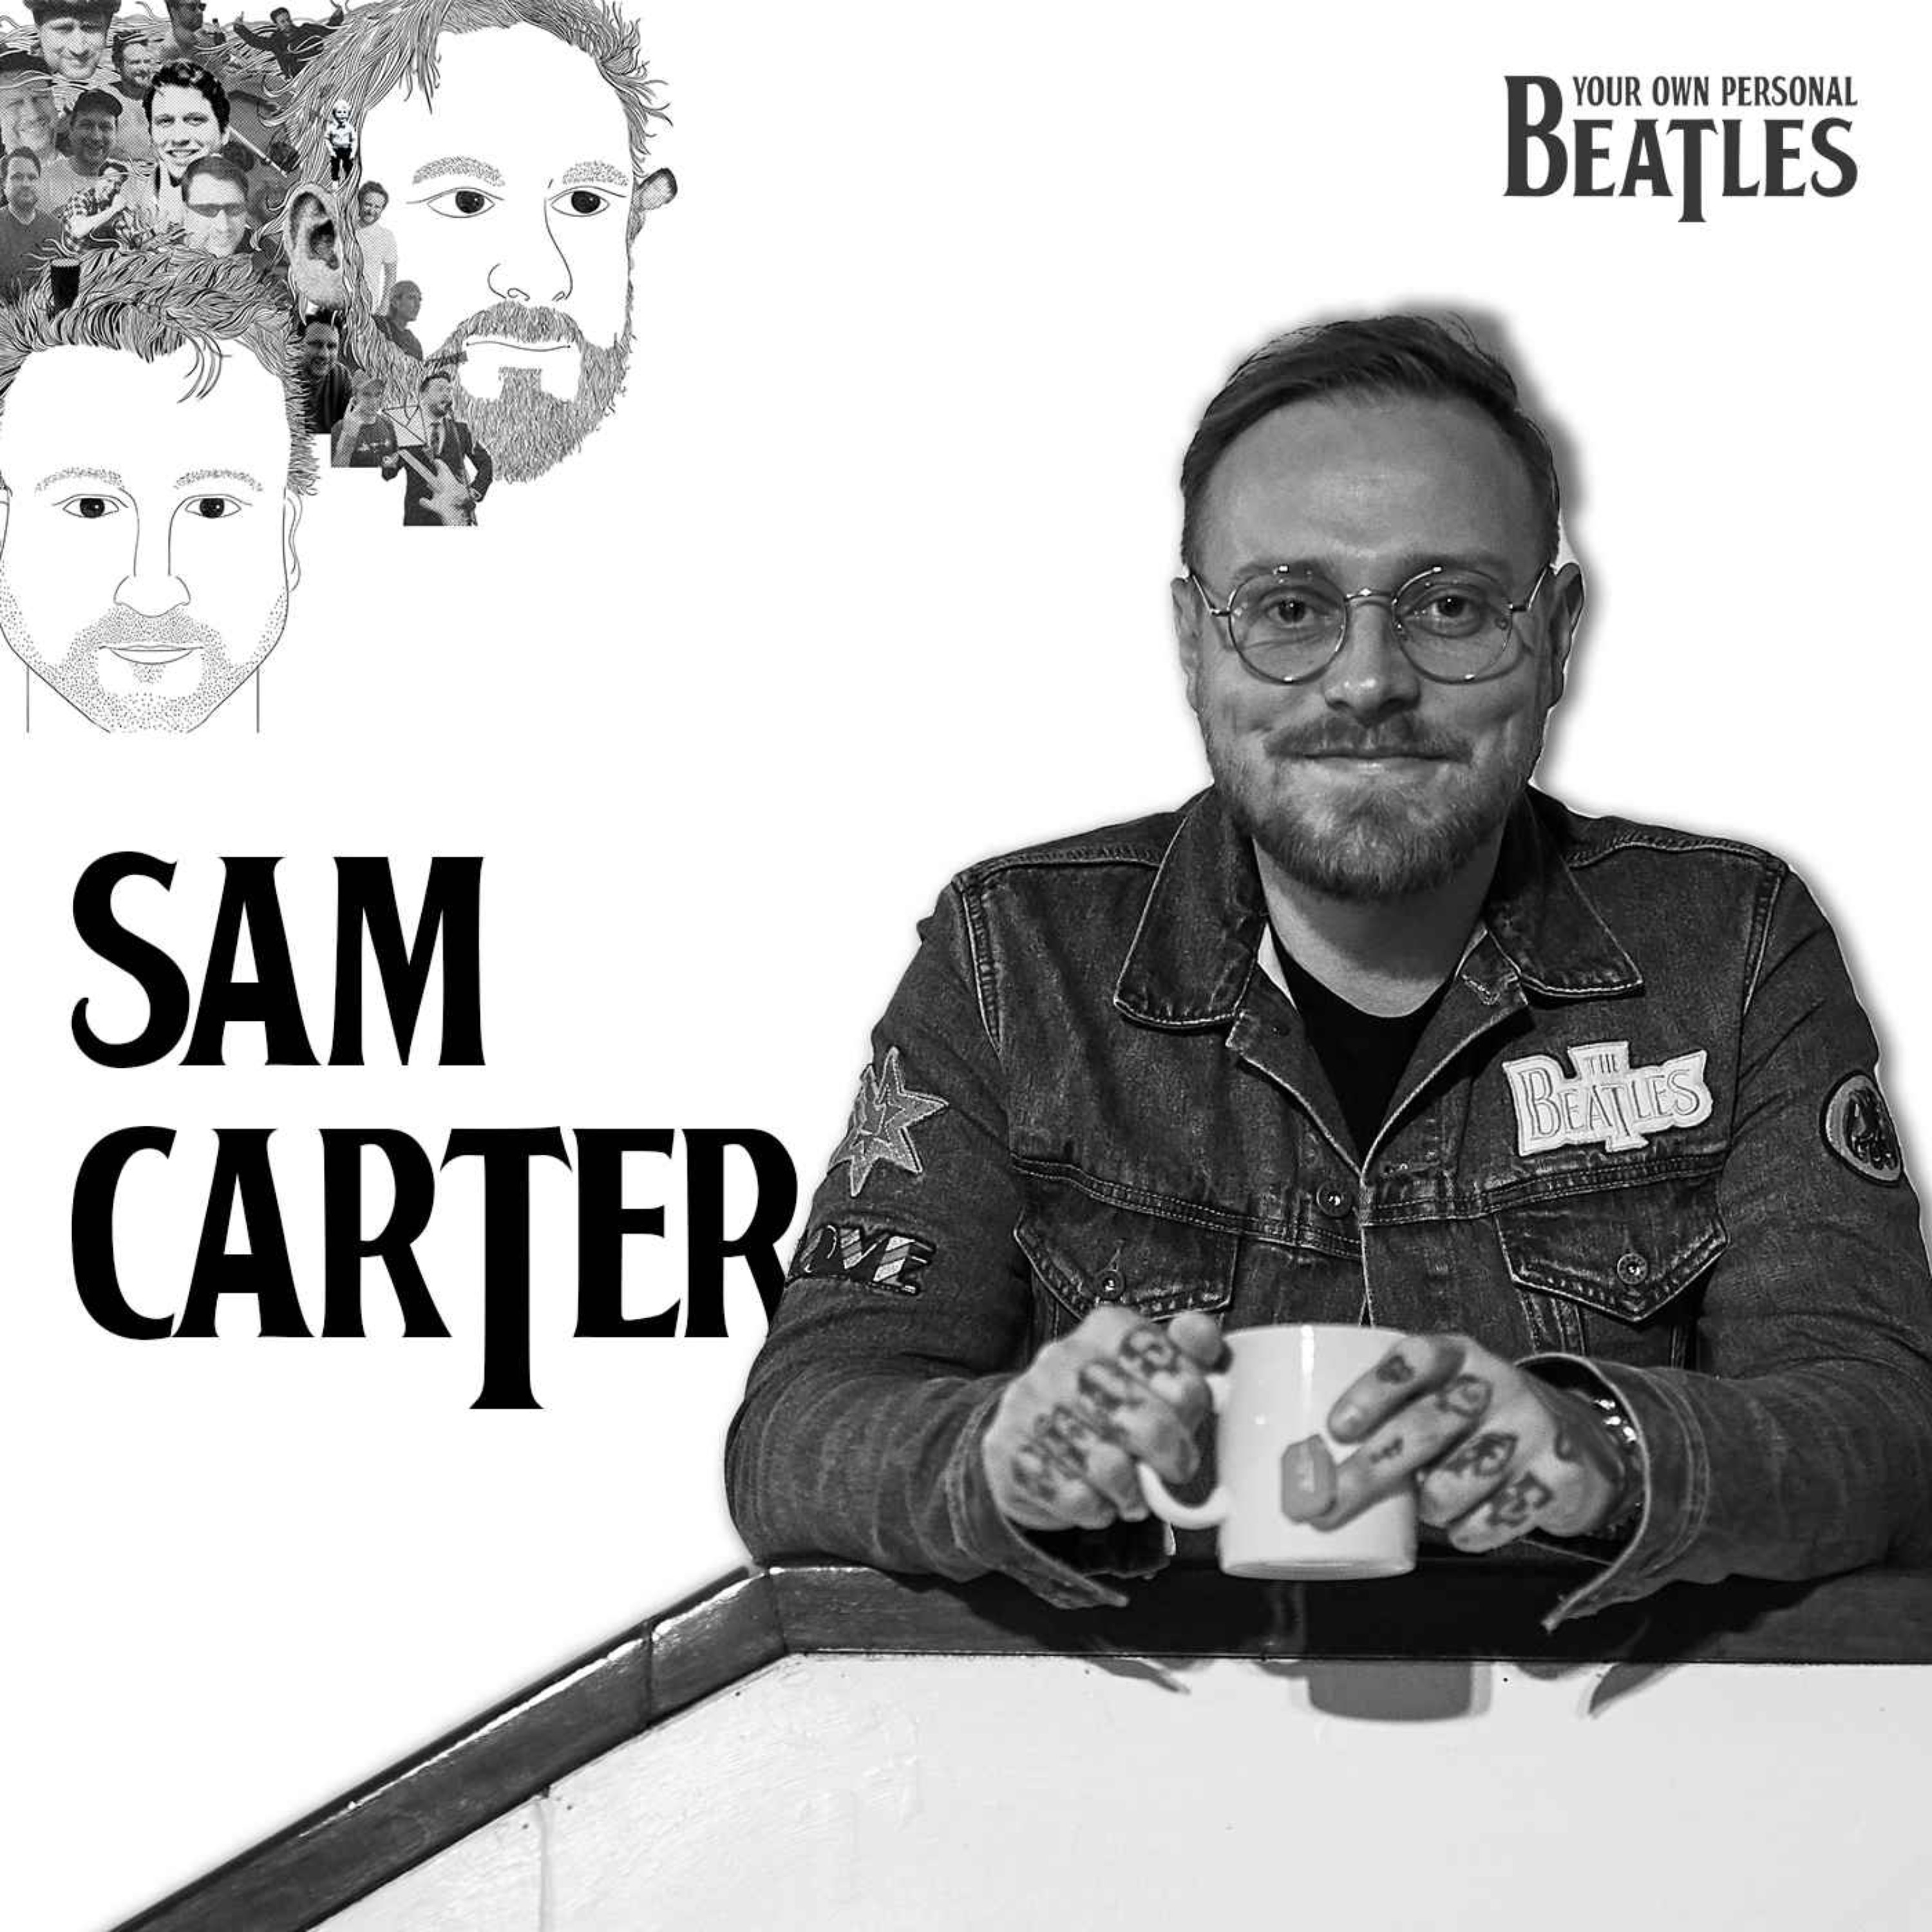 Sam Carter’s Personal Beatles